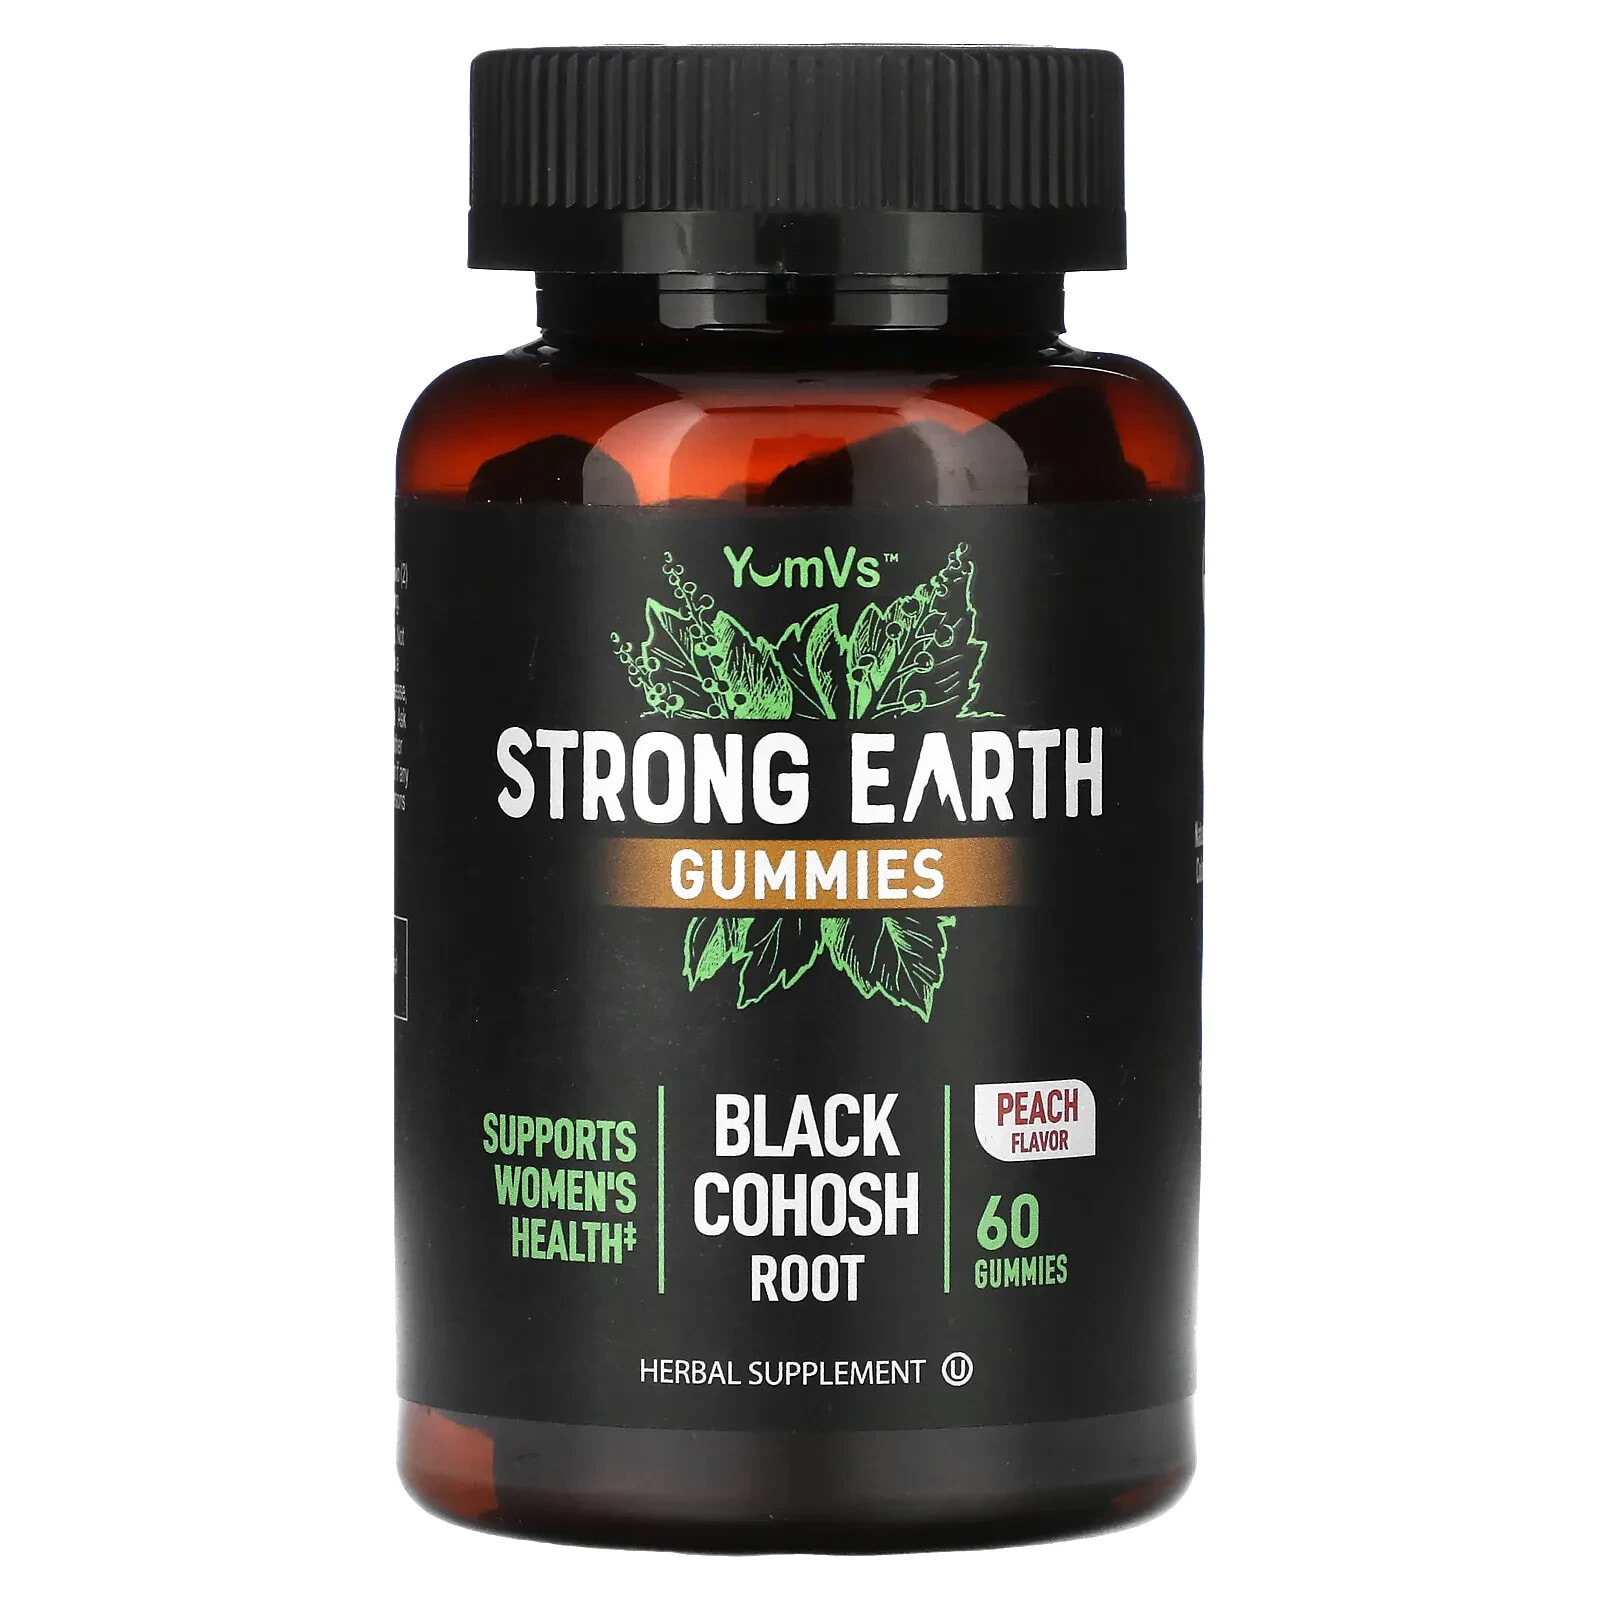 Strong Earth Gummies, Black Cohosh Root, Peach, 60 Gummies